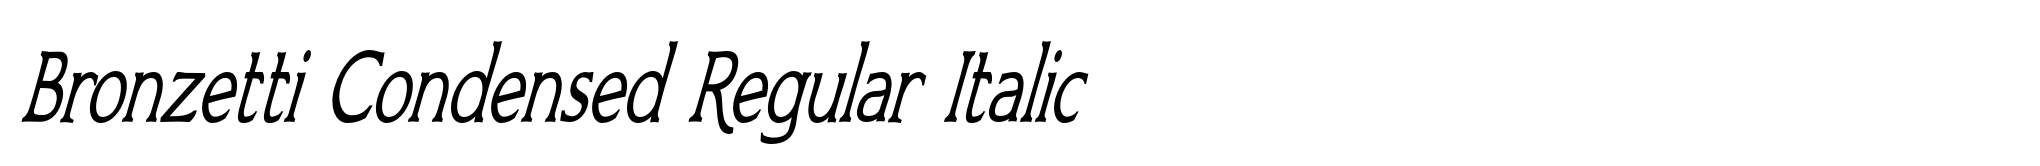 Bronzetti Condensed Regular Italic image